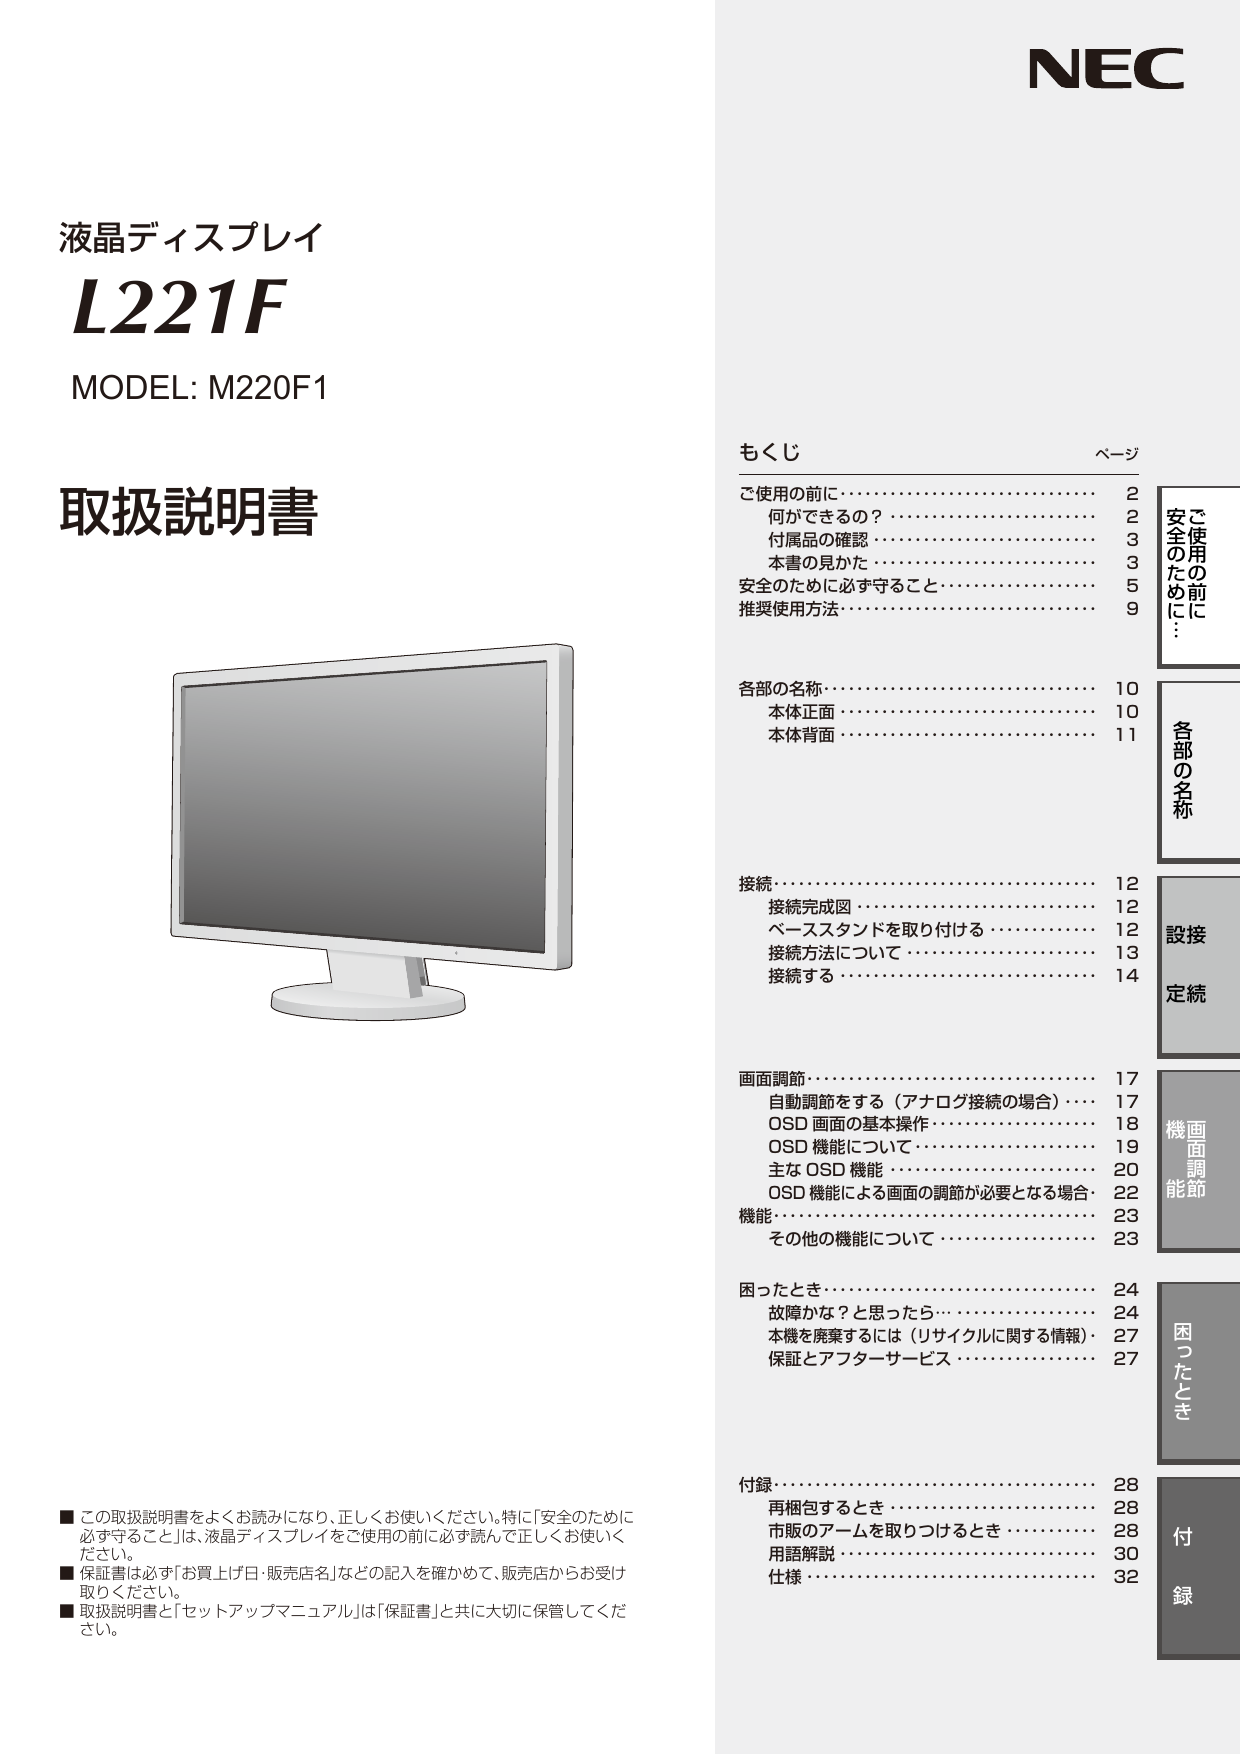 安全のために必ず守ること. NEC LCD-L221F / LCD-L221F-BK | Manualzz